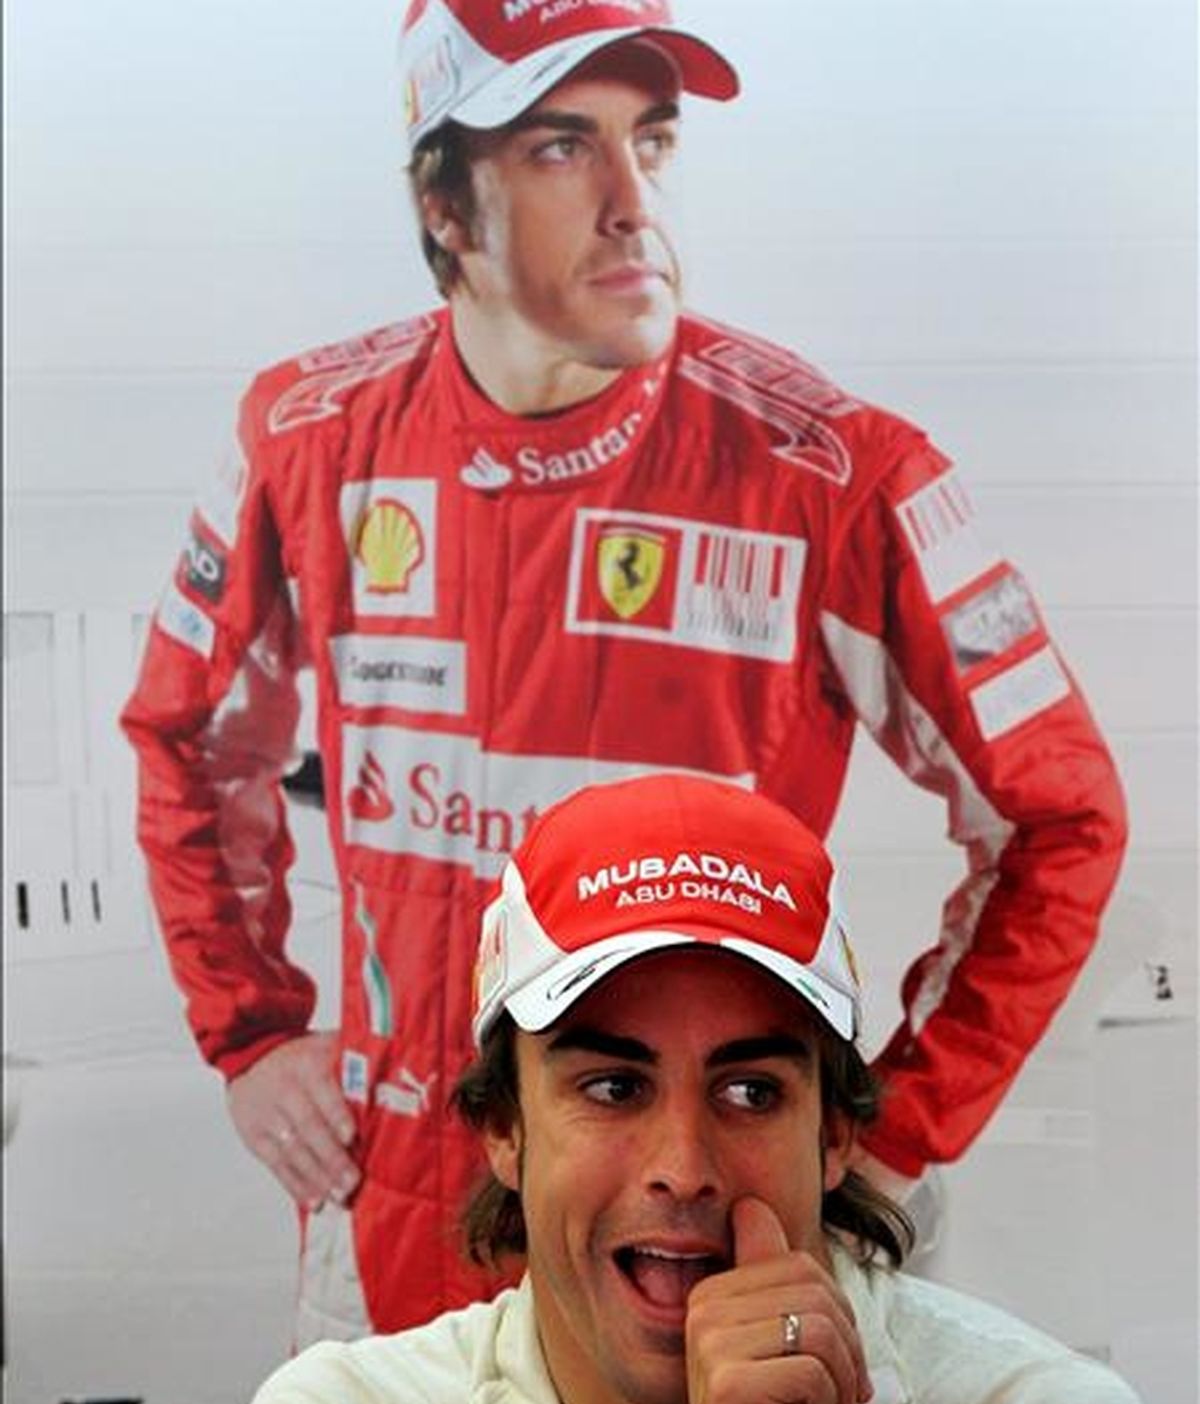 El piloto español de Fórmula Uno Fernando Alonso, de Ferrari, es fotografiado en el garaje de su equipo durante los entrenamientos libres previos al Gran Premio de Gran Bretaña en Silverston, Reino Unido. El Gran Premio de Gran Bretaña se celebra el próximo domingo 11 de julio. EFE